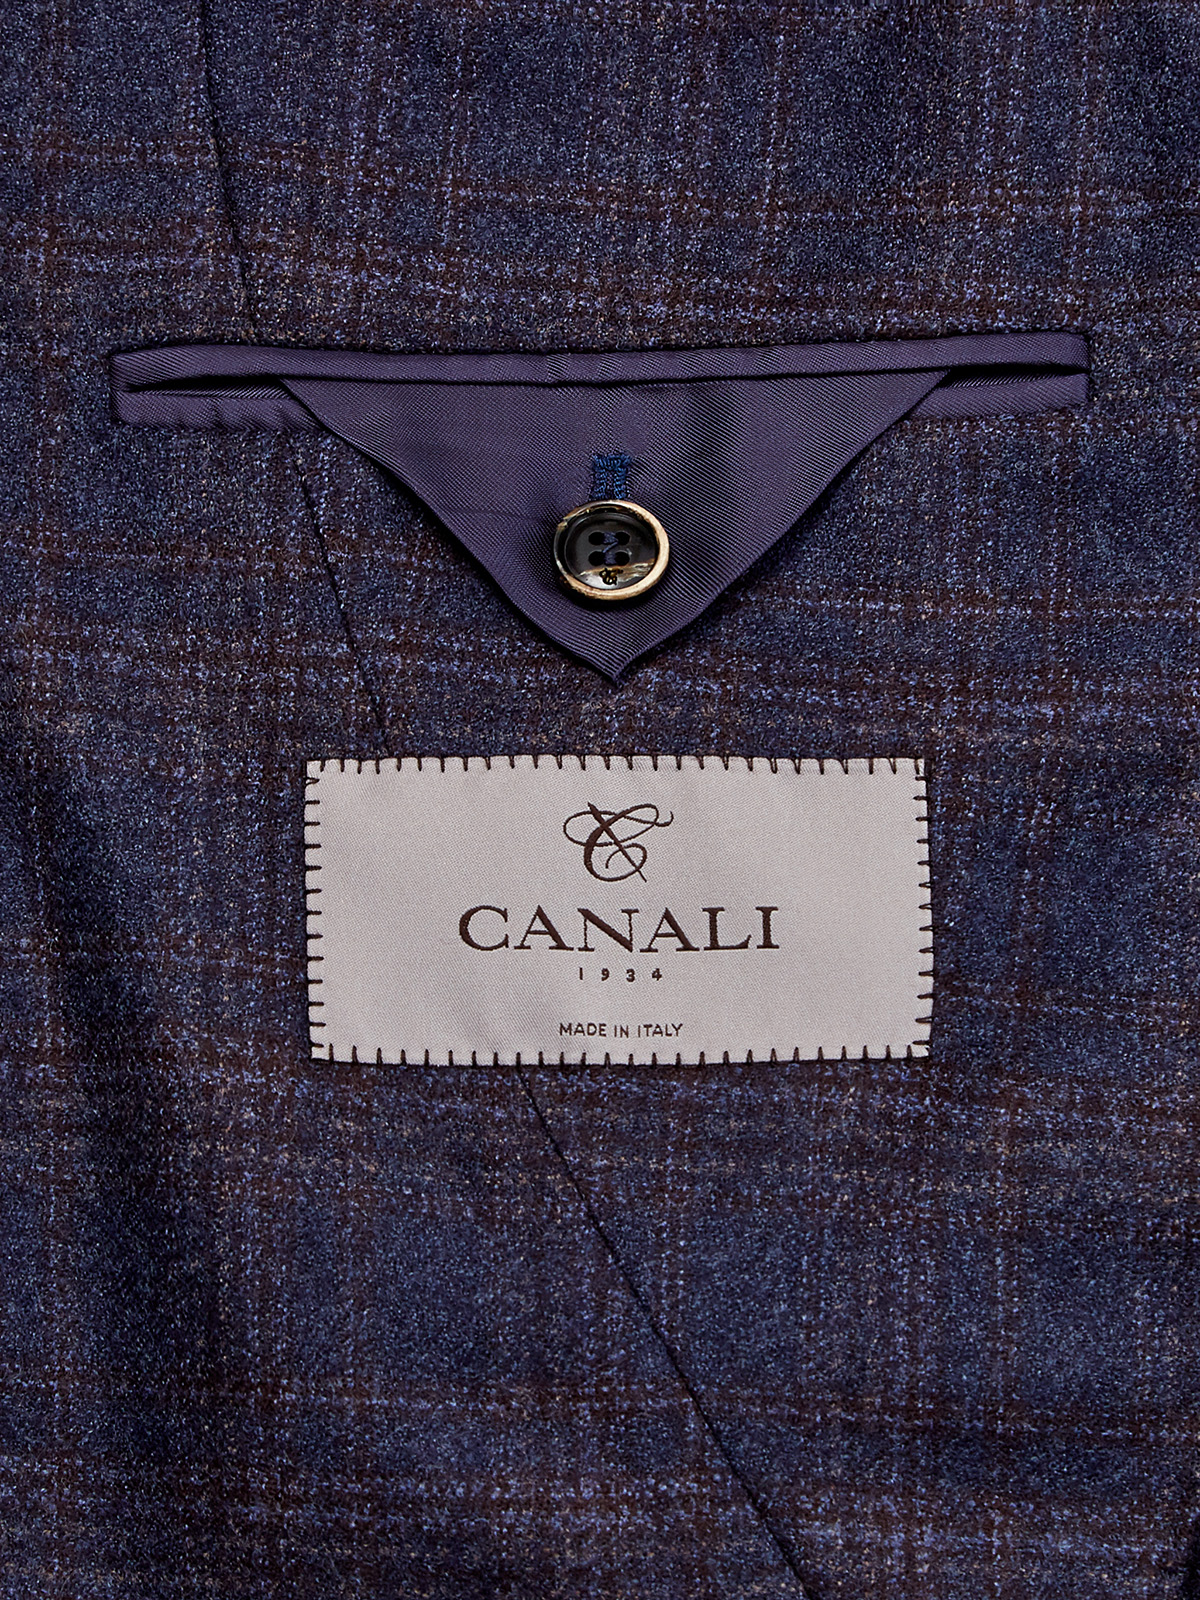 Классический пиджак ручной работы из шерсти в клетку CANALI, цвет синий, размер 50;54;56 - фото 6